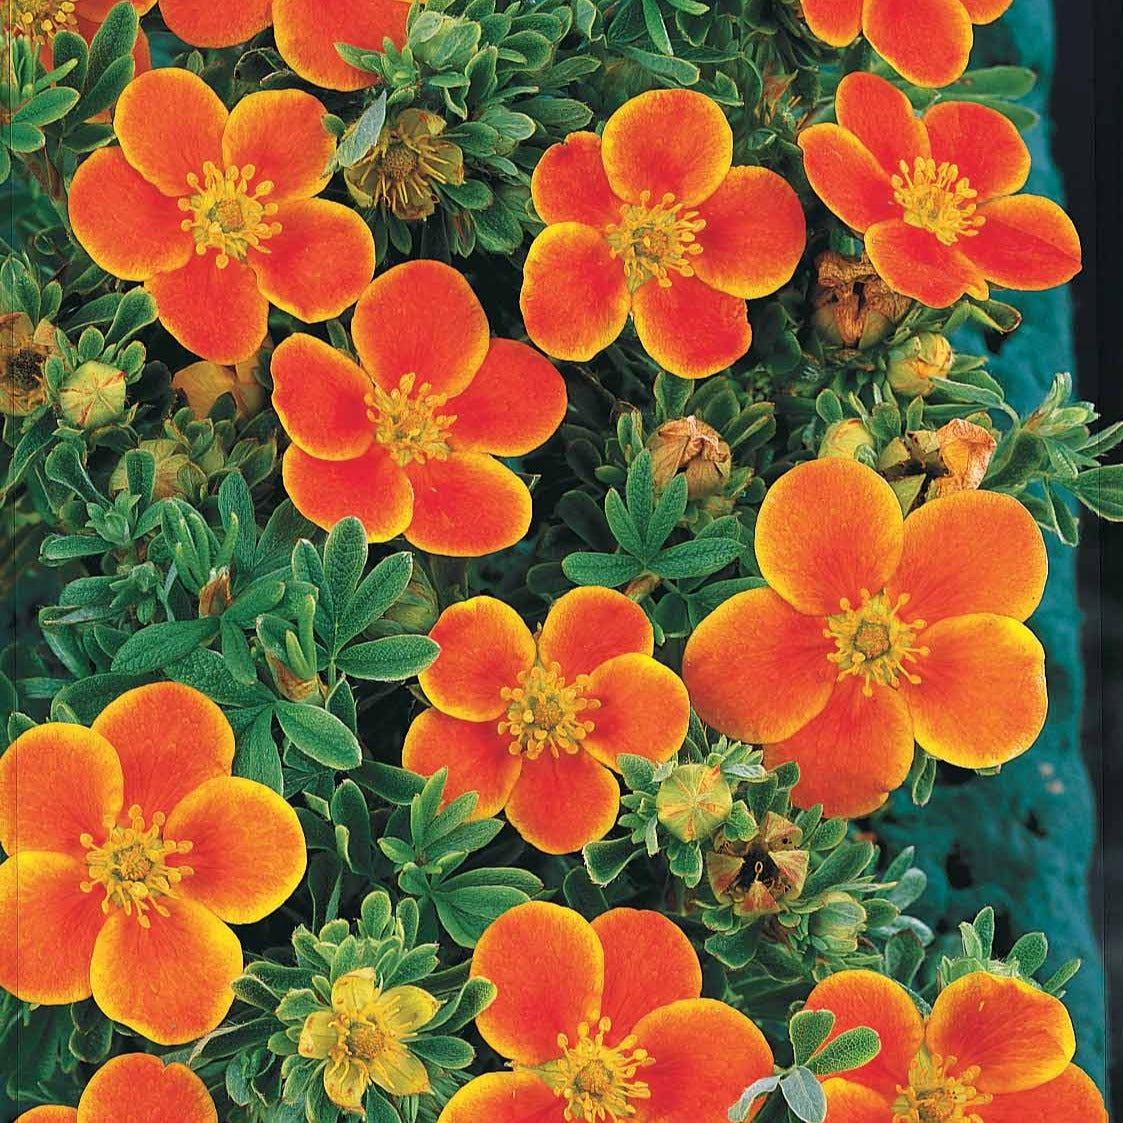 Ganzerik Mix - oranje + geel + wit - 1,5 meter haag (x3) - Potentilla ‘hopley’s’ orange, goldfinger jaune, ‘a - Heesters en vaste planten